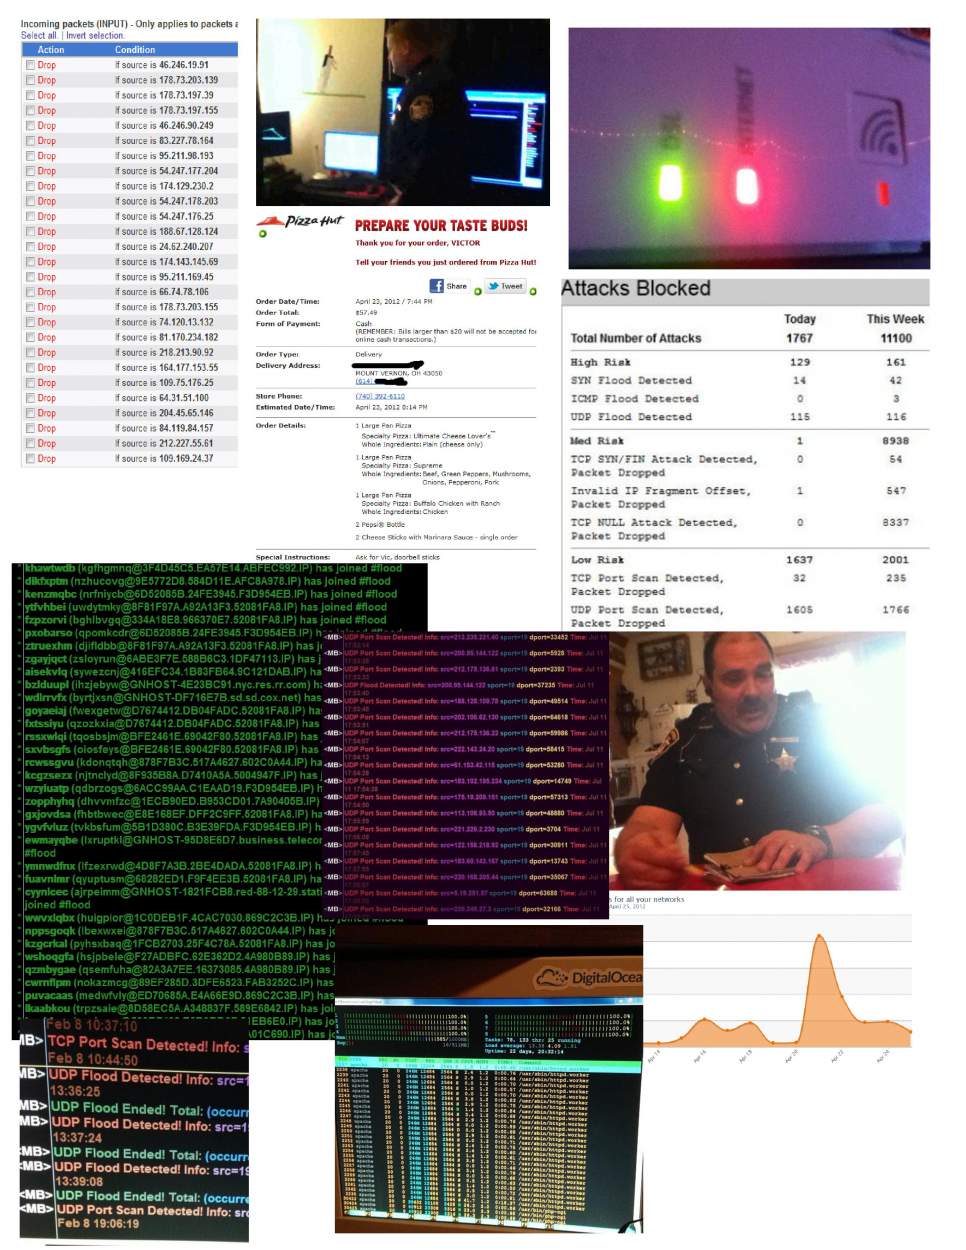 GTAXLnet history of attacks